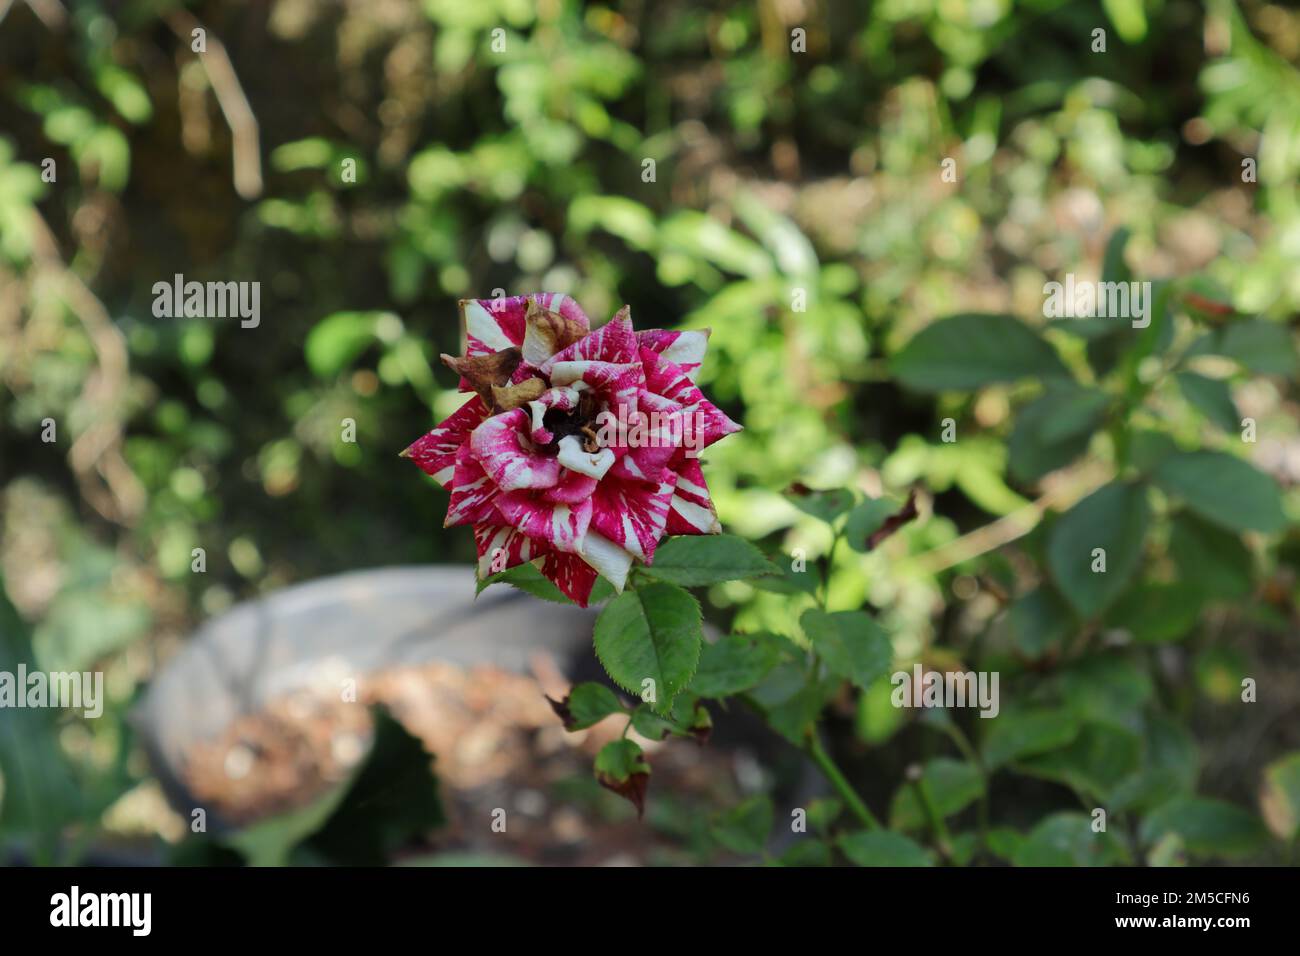 Gros plan d'une fleur de rose mélangée violette et blanche morte dans le jardin Banque D'Images